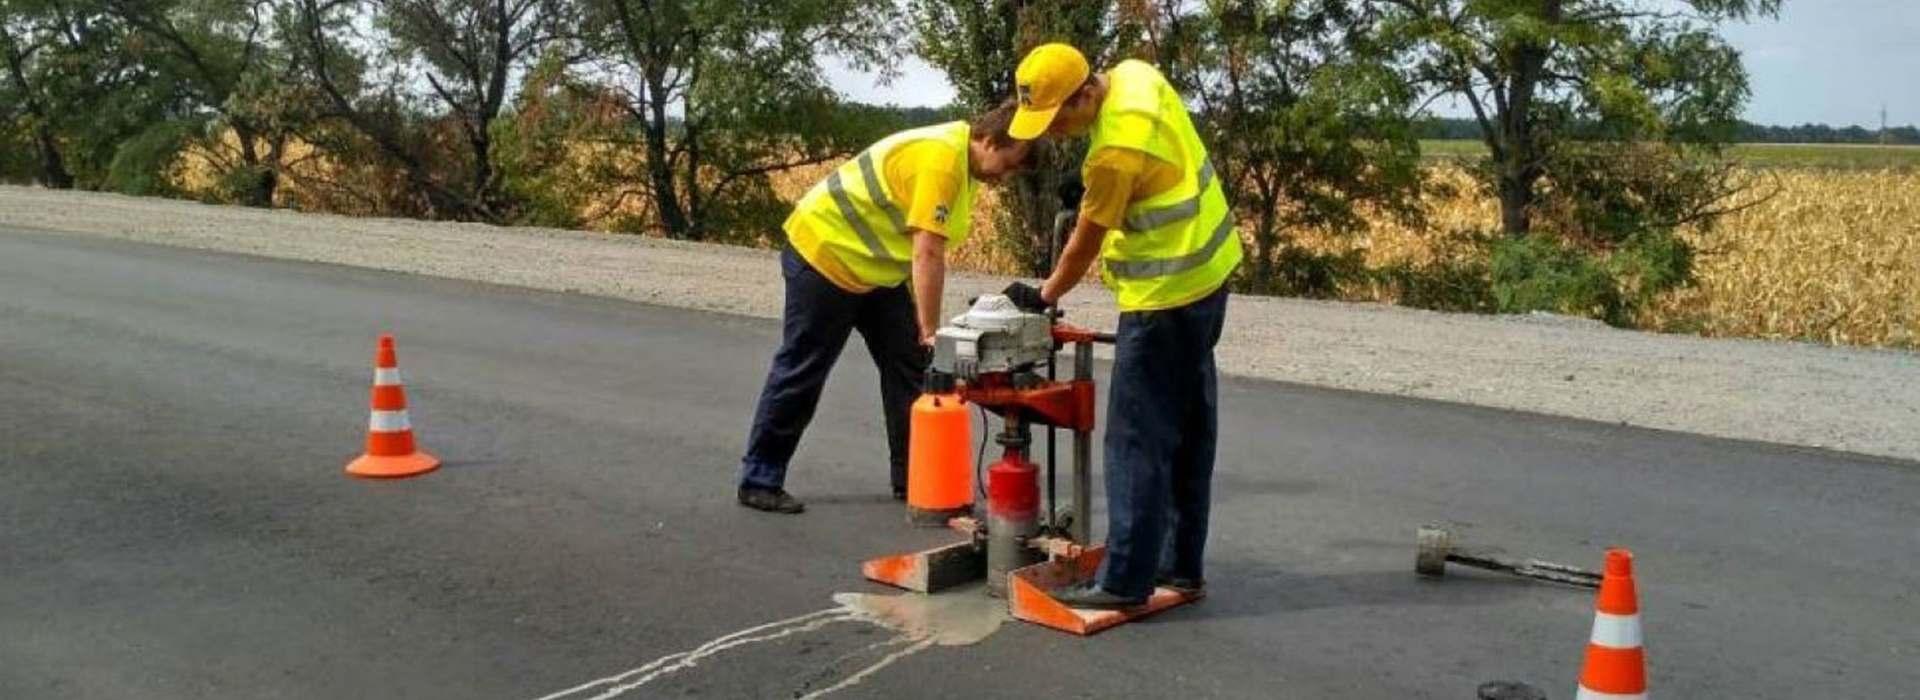 Правила ремонта дорог: требования законодательства и расчет нормативов